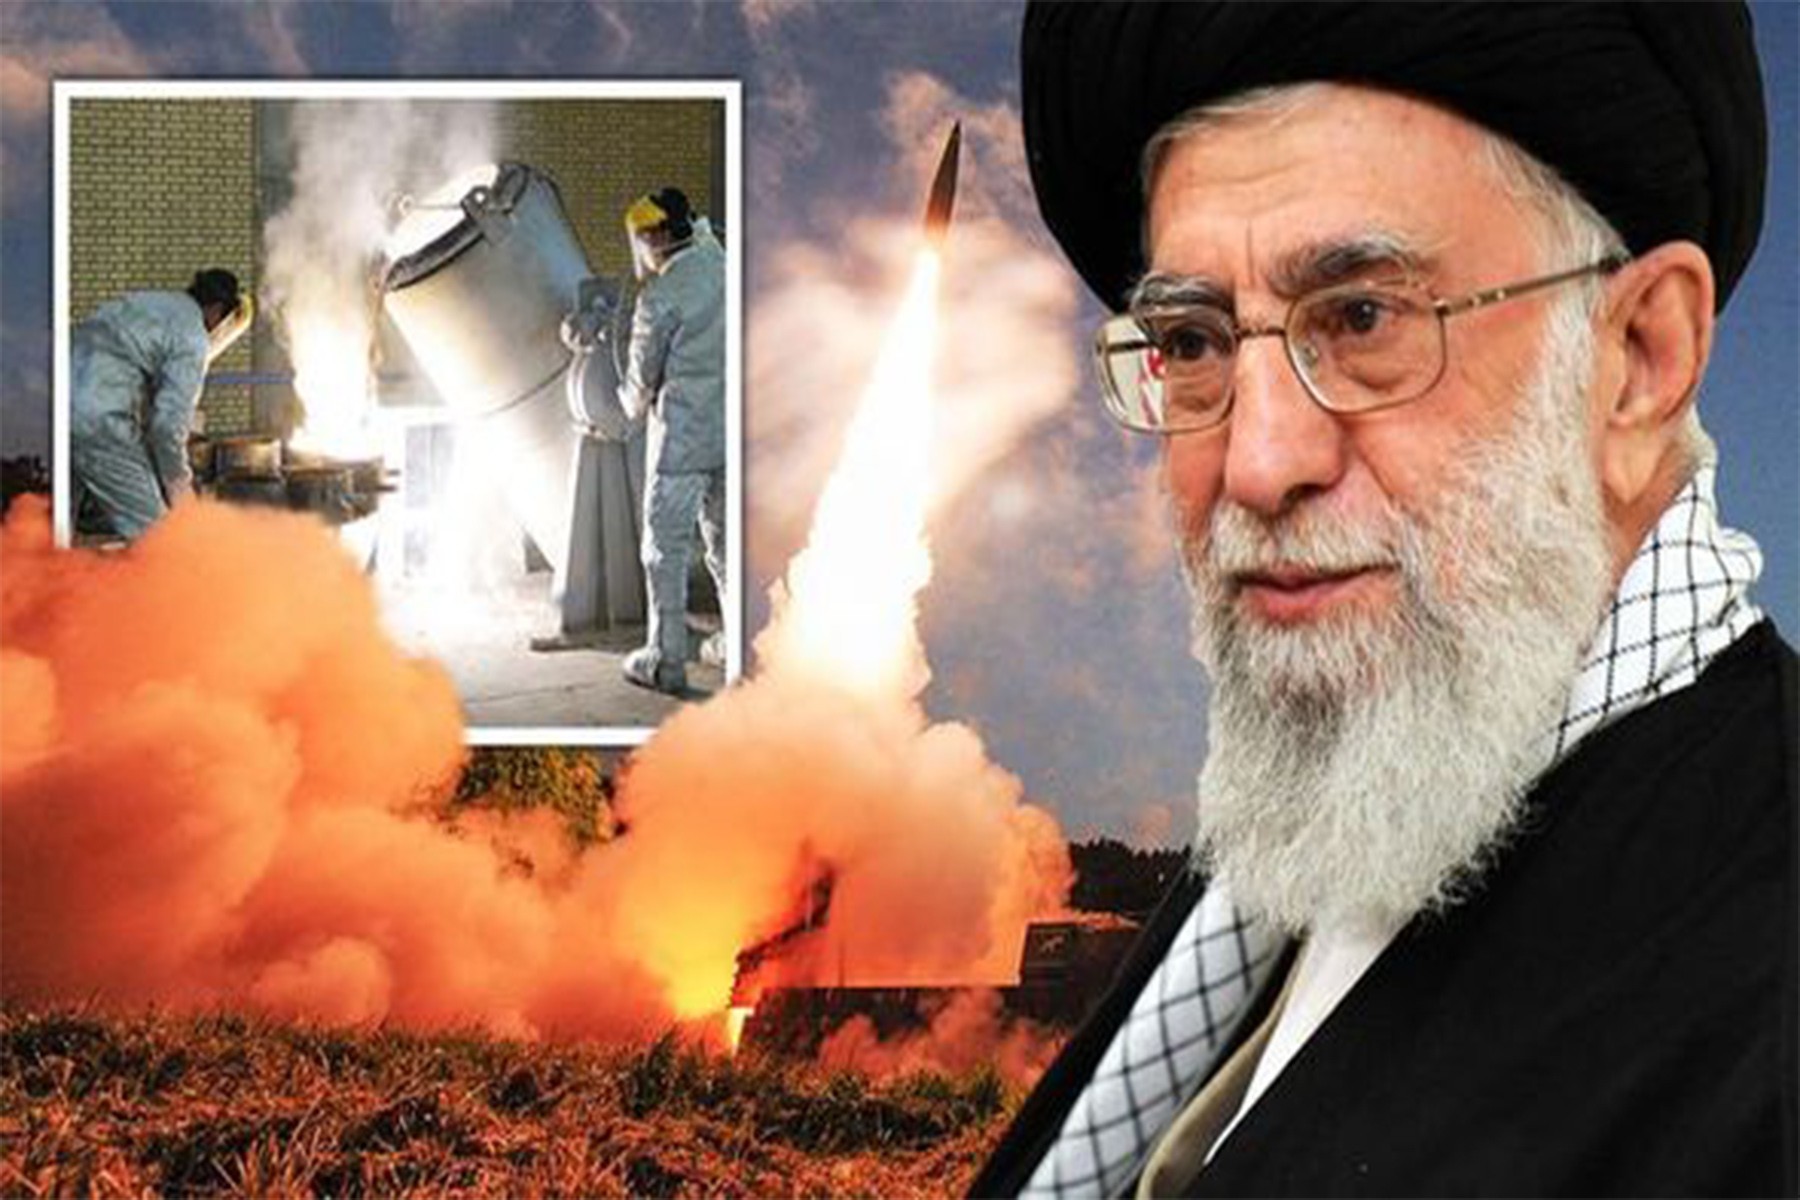 جمهوری اسلامی تهدید به ساخت بمب هسته ای می کند